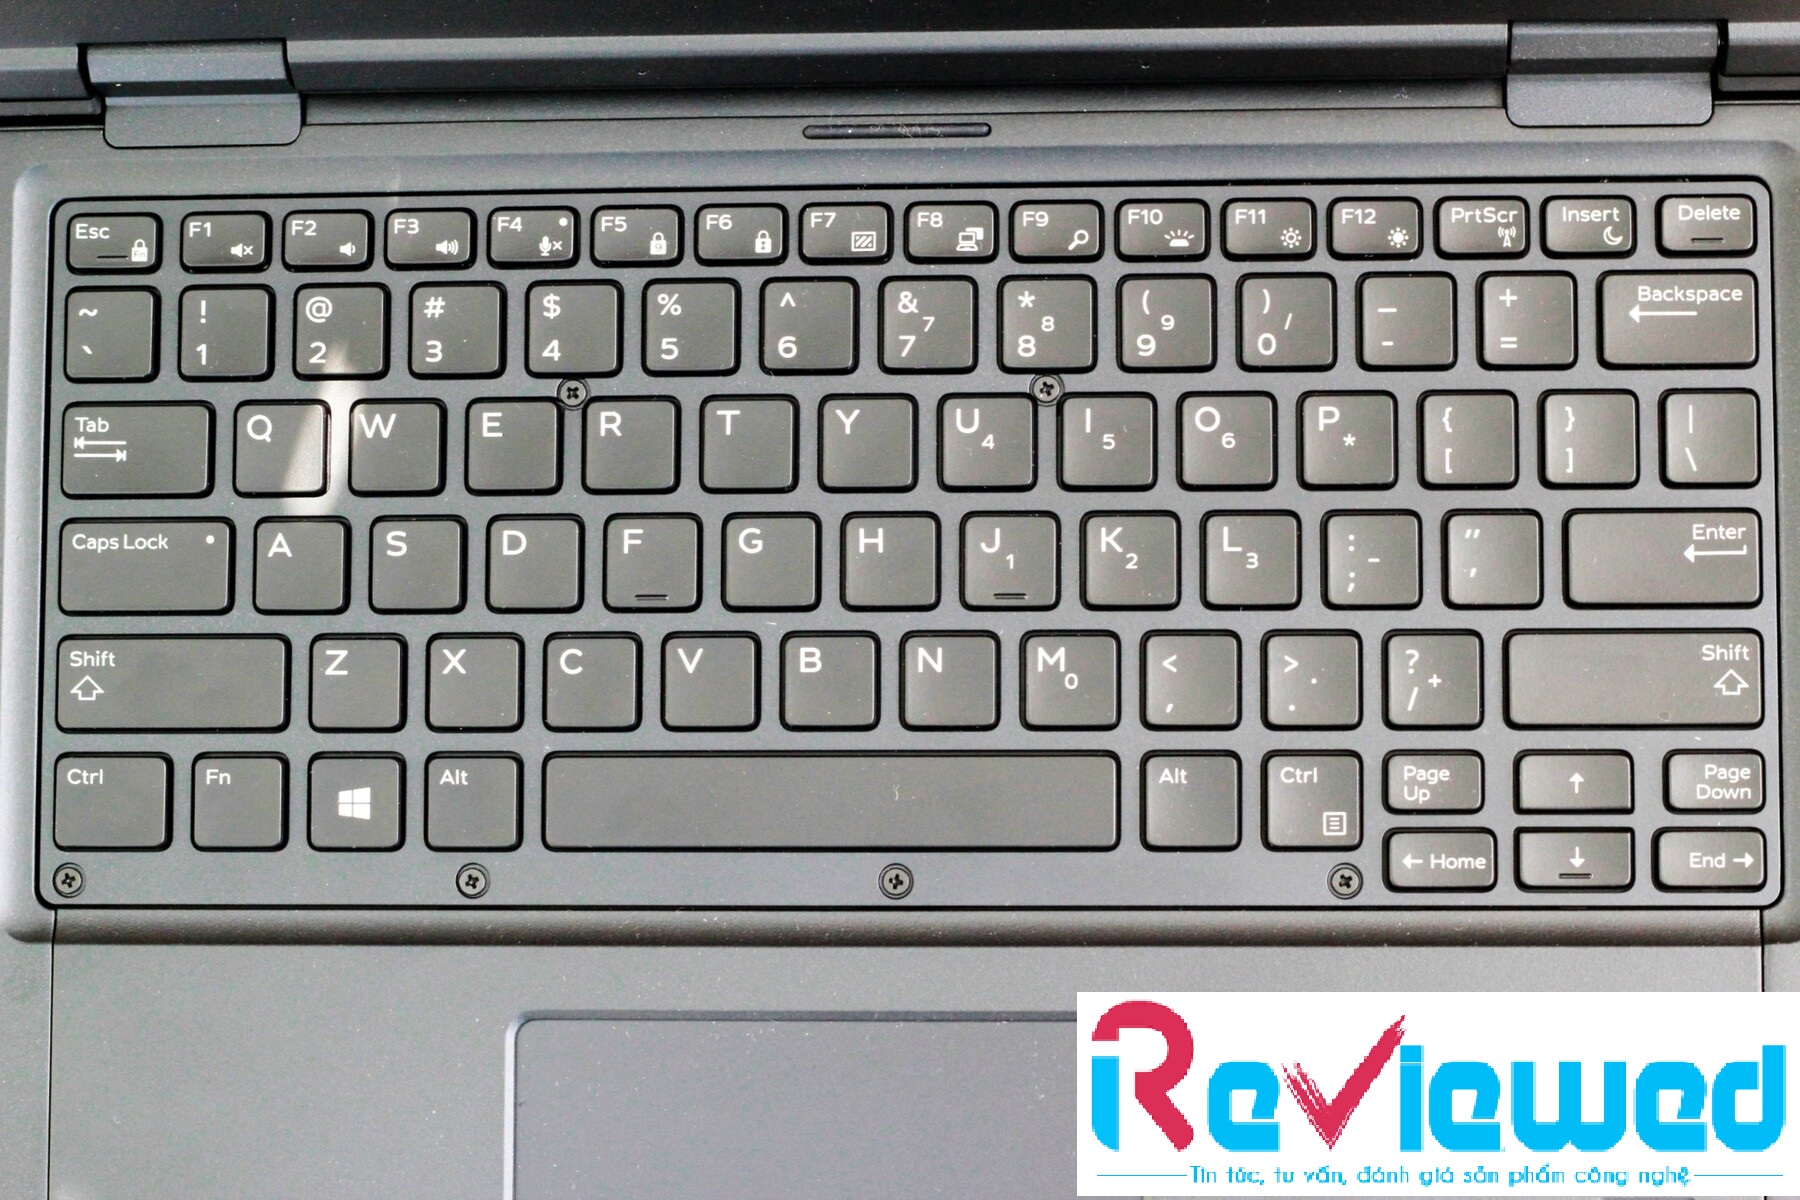 Đánh giá Dell Latitude 7424 Rugged: Laptop cực bền, Chuyên trang tư vấn laptop